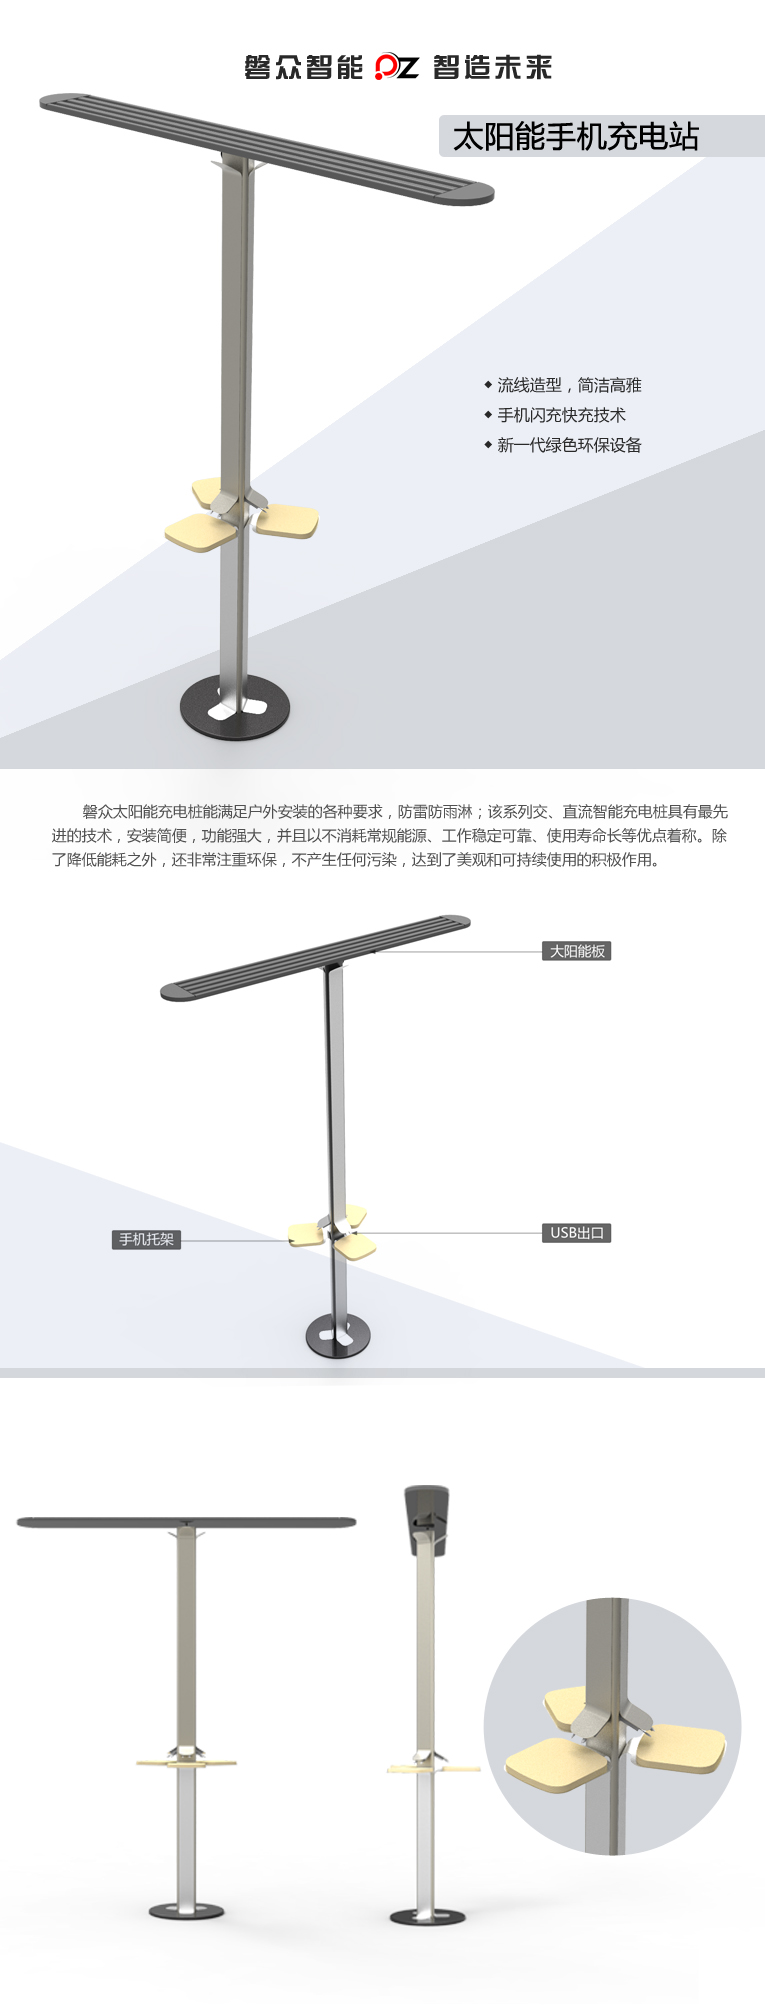 太阳能手机充电站、自助加油站-广州磐众智能科技有限公司